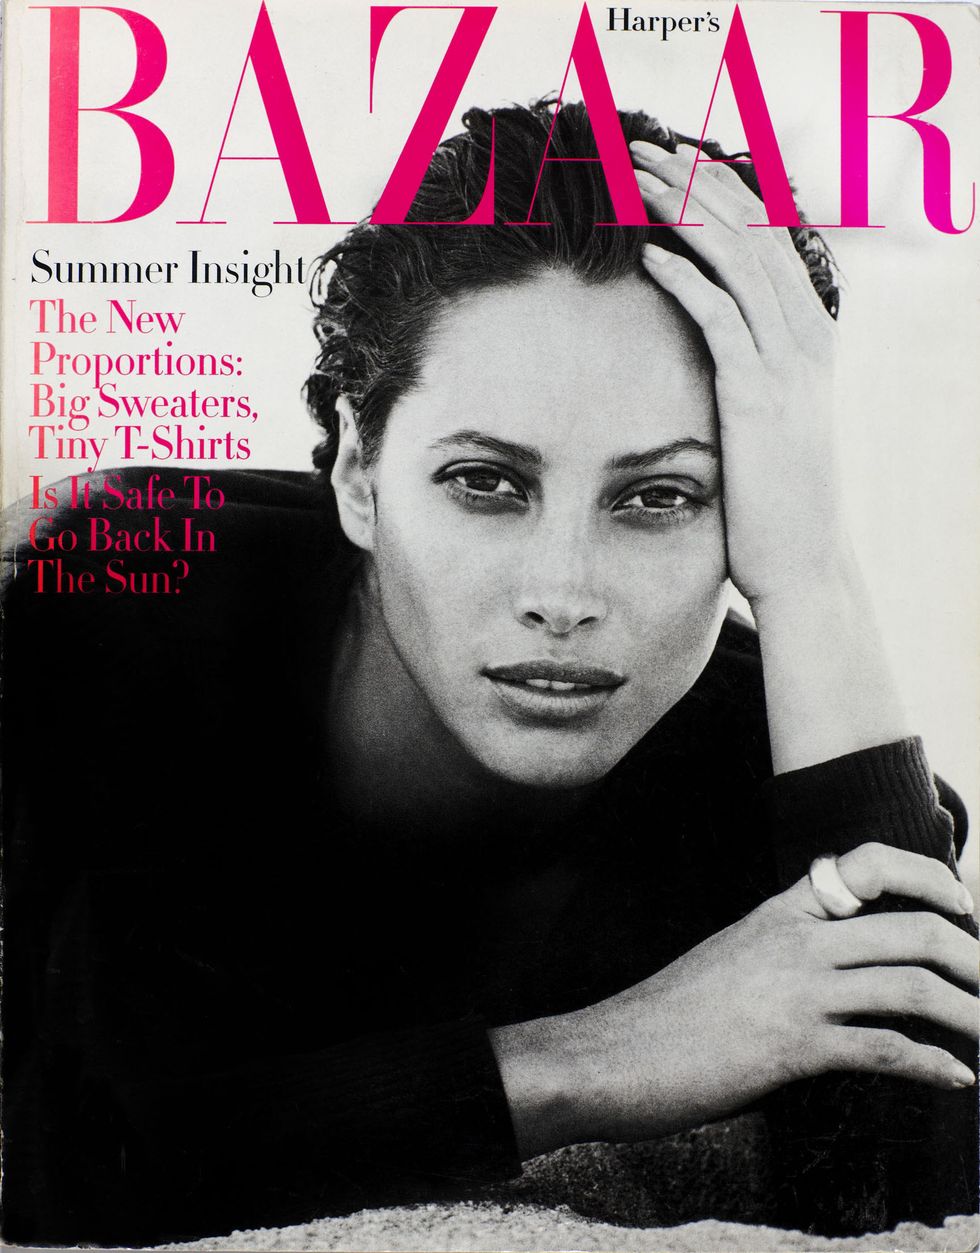 Harper's BAZAAR Cover, May 1993